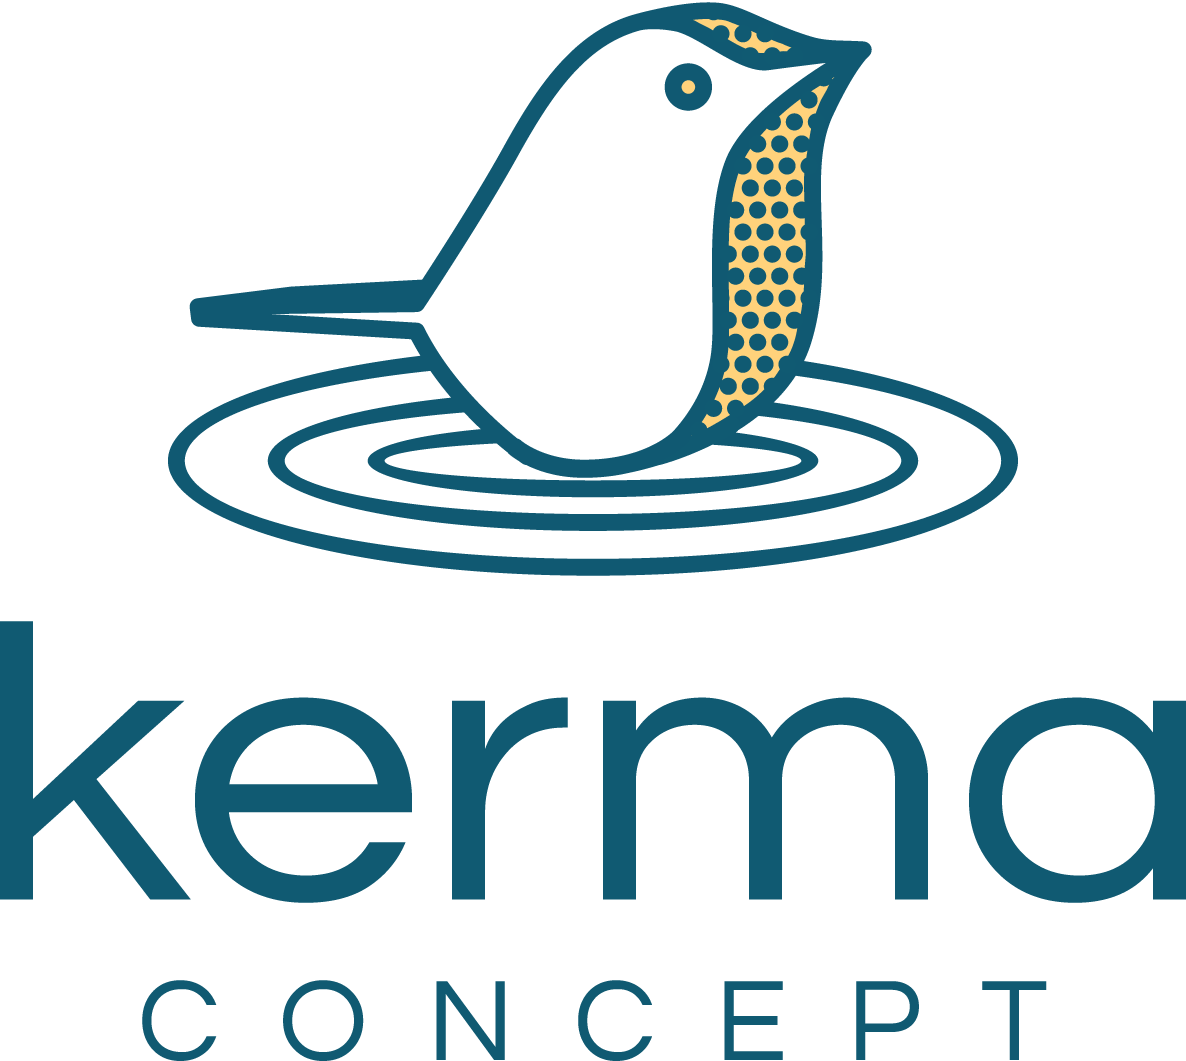 Kerma Concept - Ateliers collaboratifs et communication d'équipe